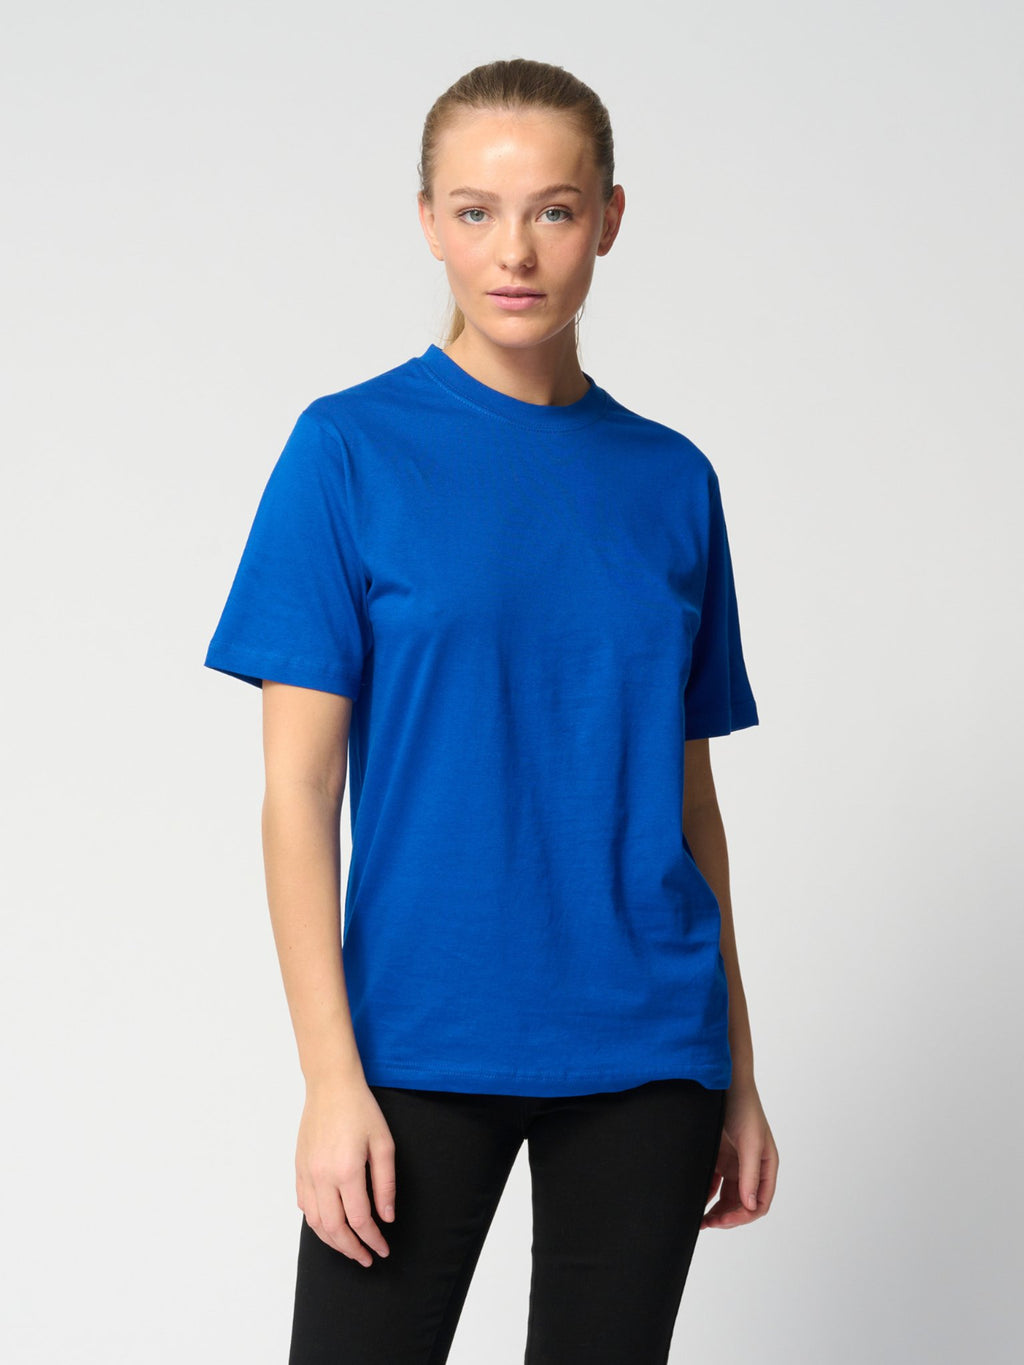 Negabaritiniai marškinėliai - mėlyni